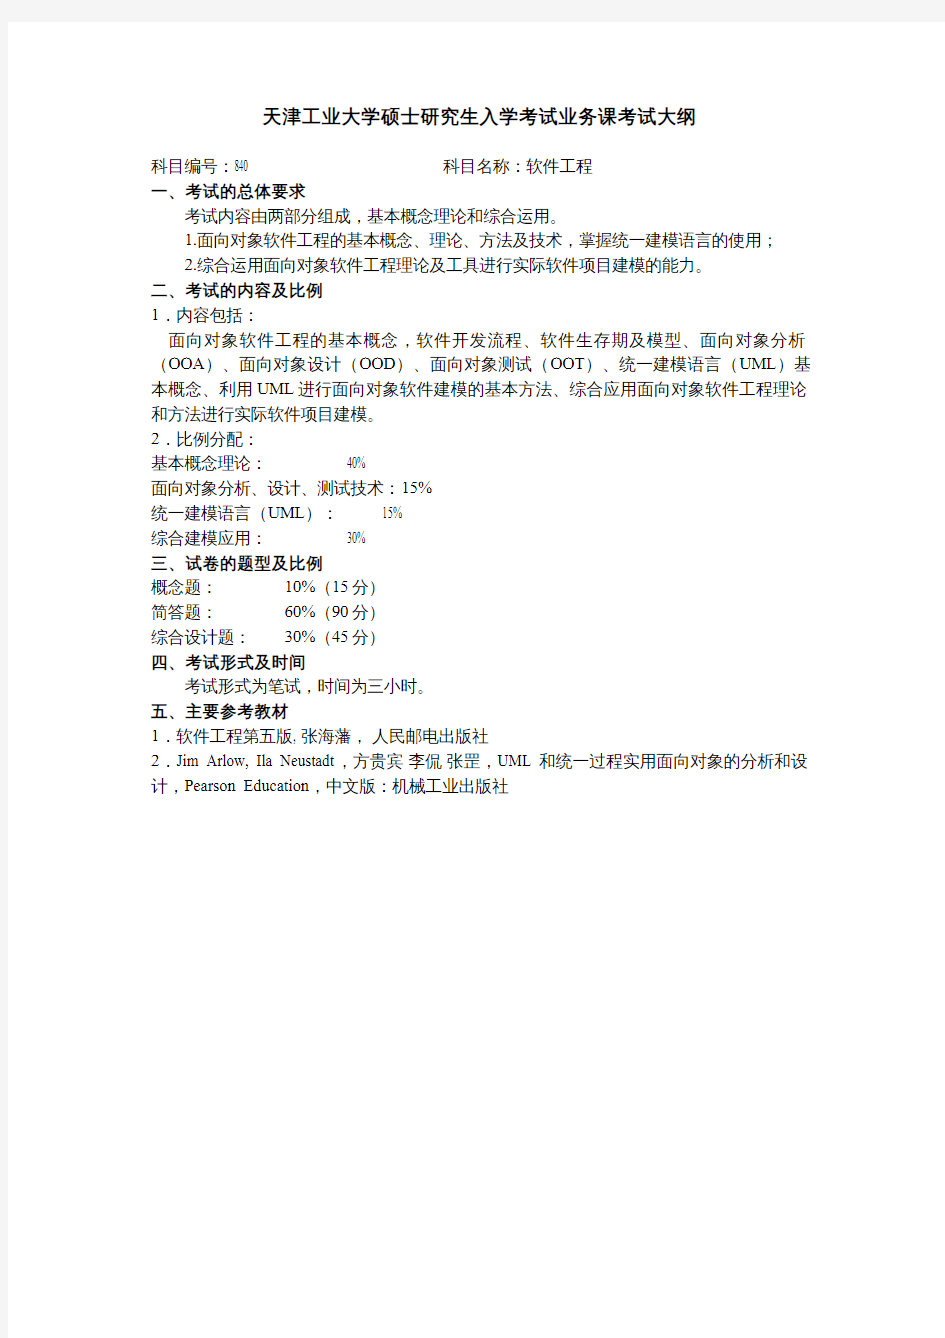 天津工业大学2020考研初试自命题科目考试大纲840软件工程